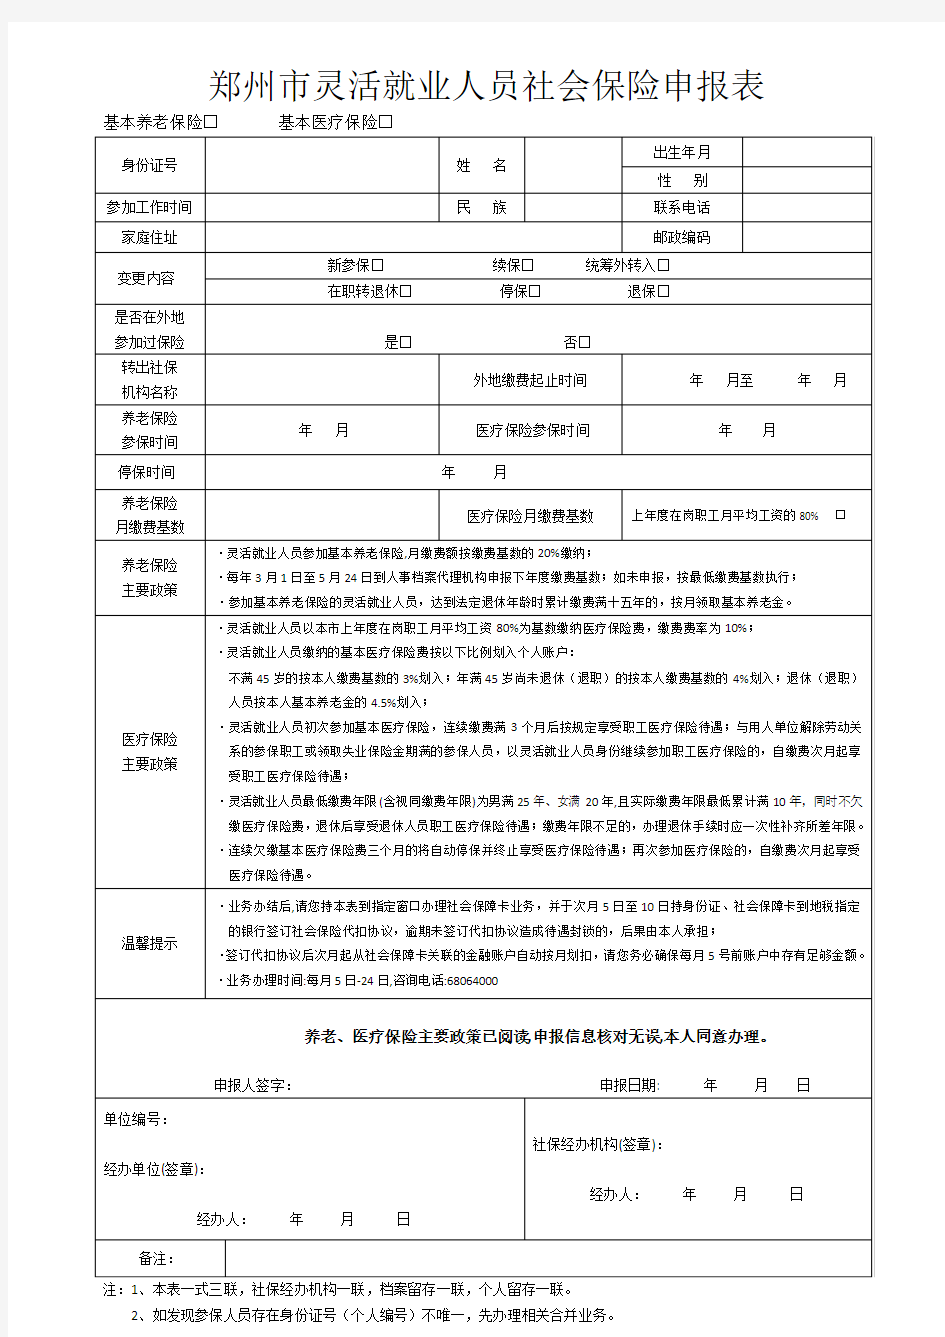 郑州市灵活就业人员社会保险申报表